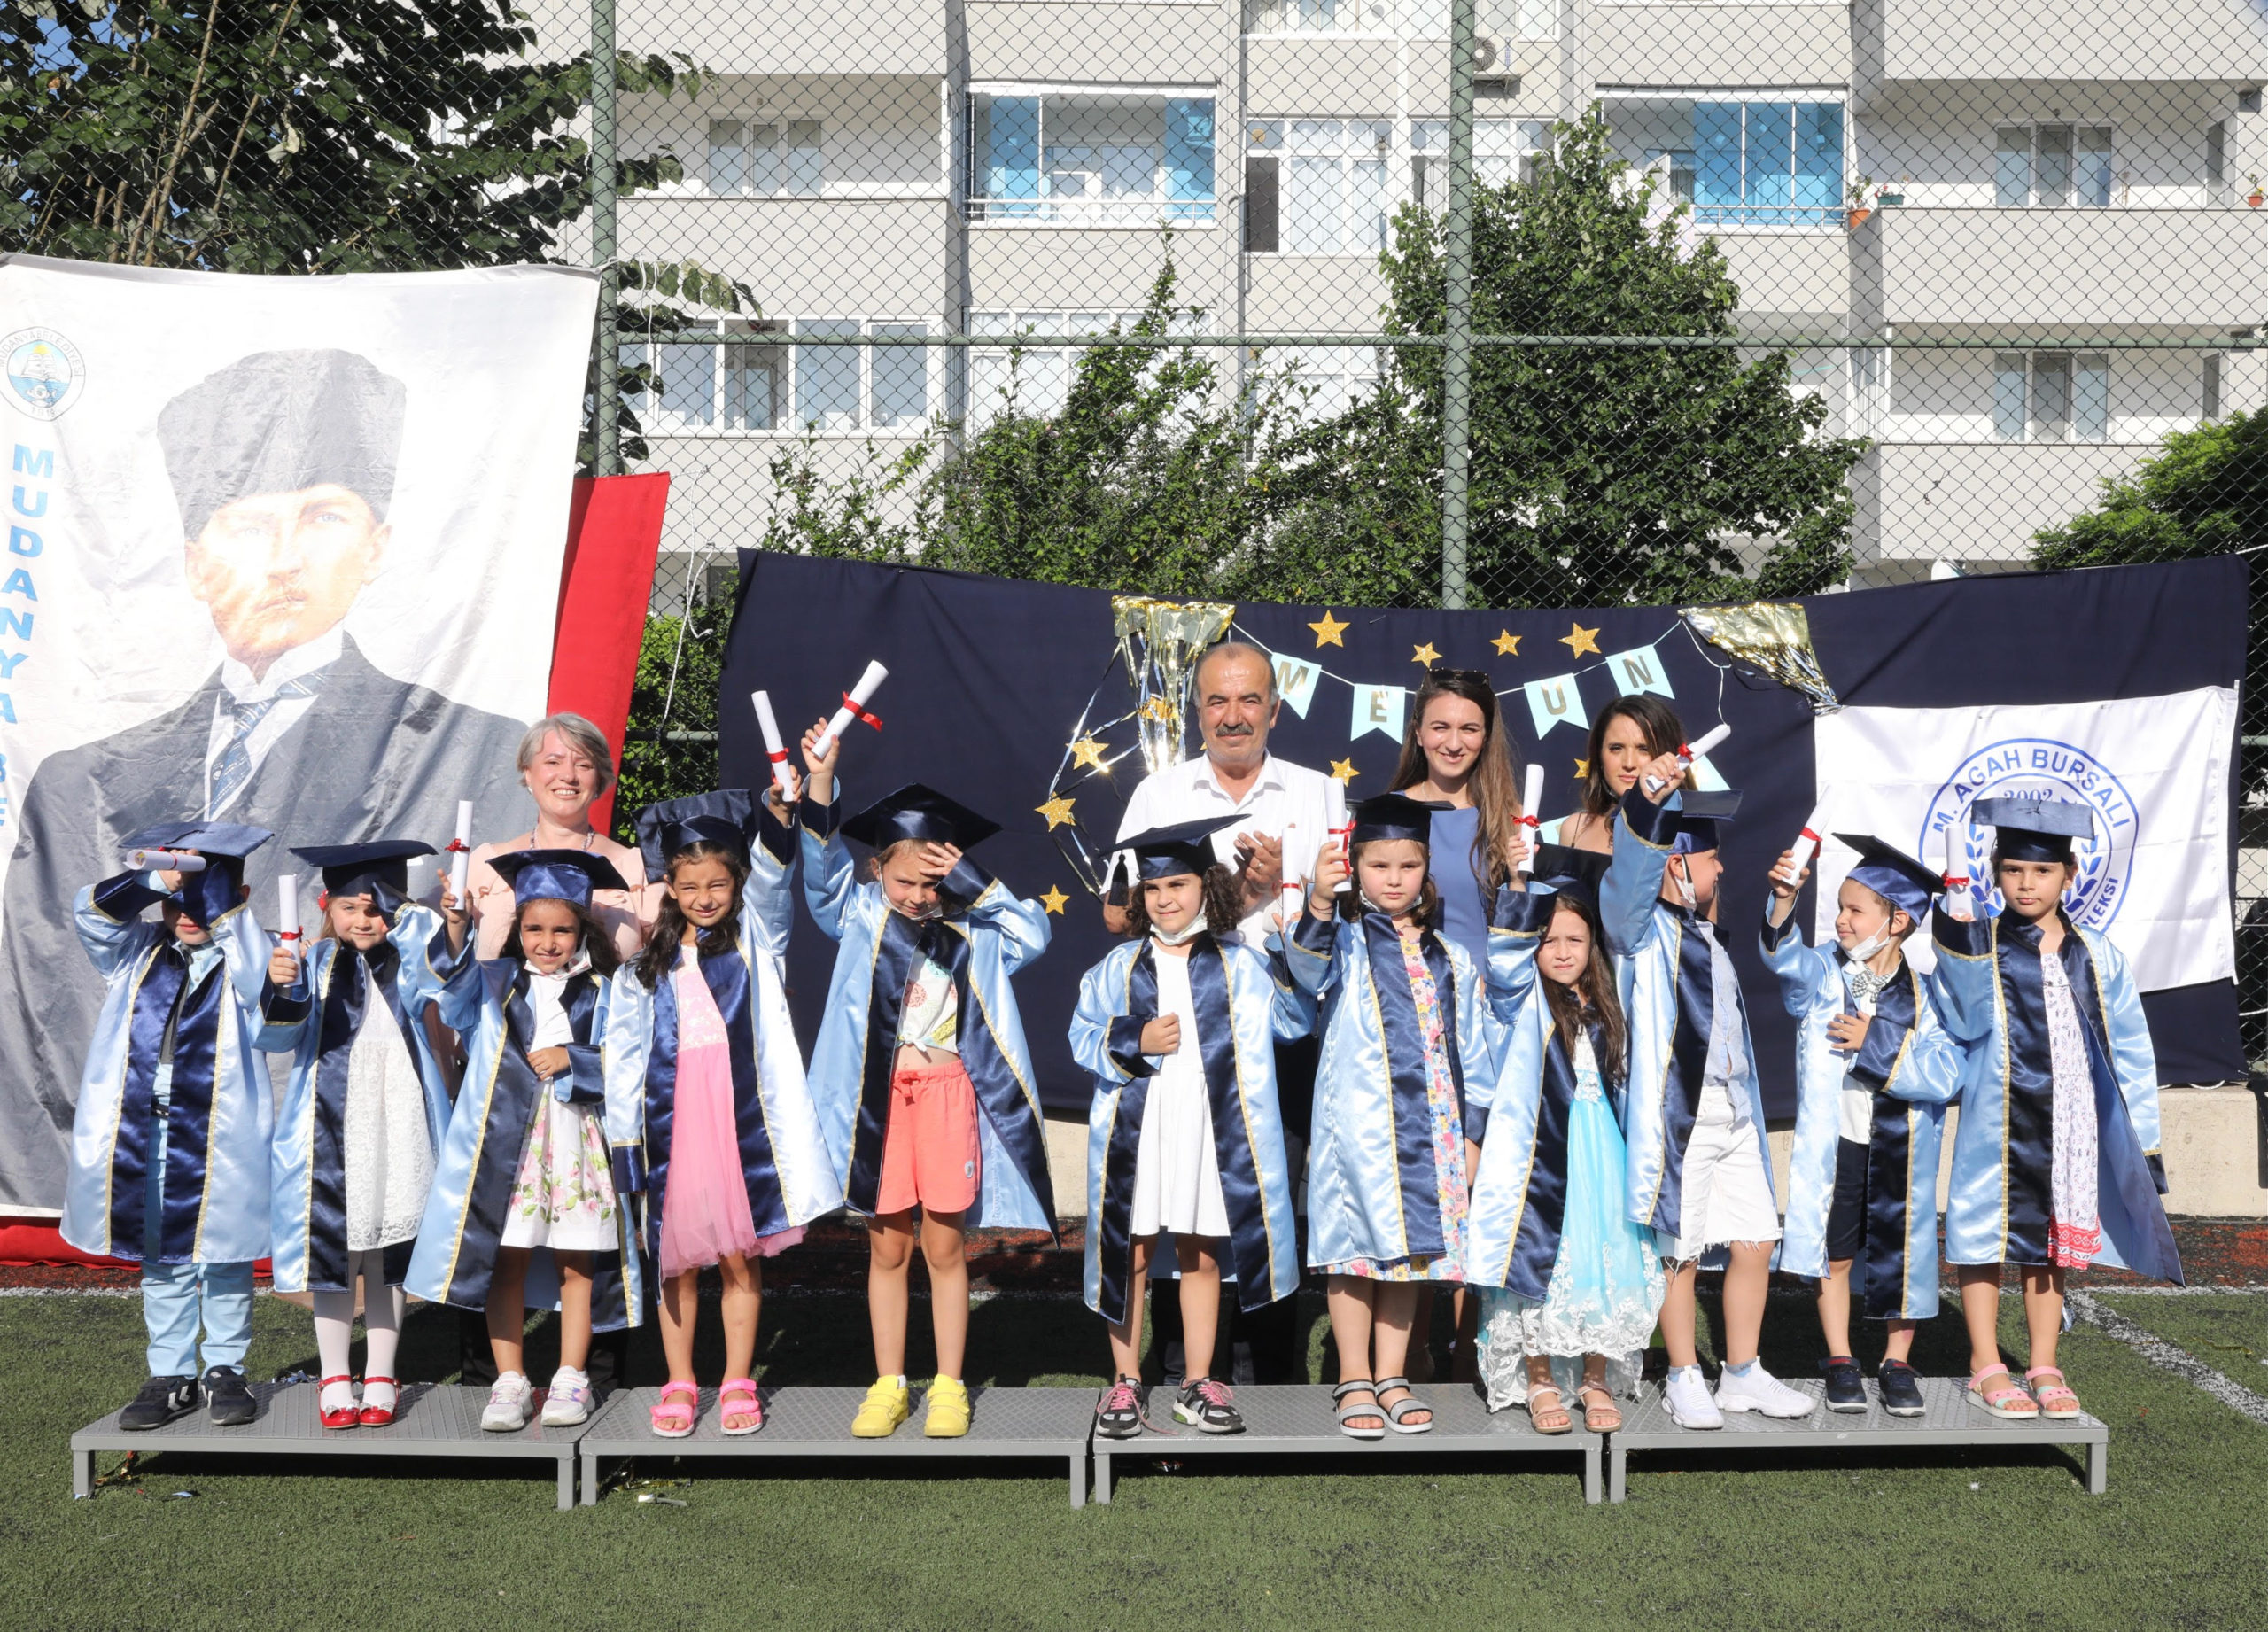  Mudanya Belediyesi M. Agah Bursalı Kreşi Öğrencileri Mezun Oldu